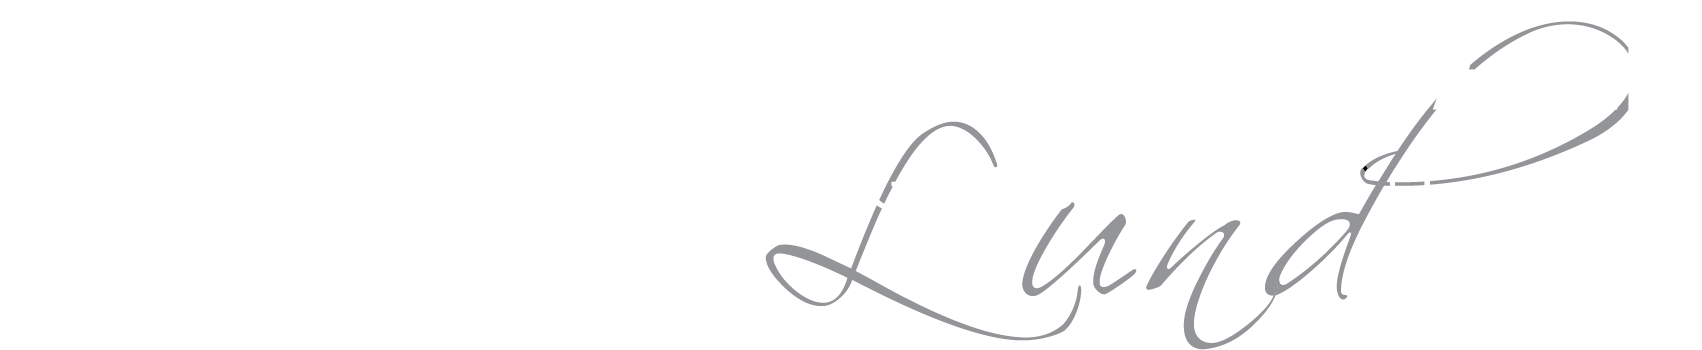 Science Village Hall Footer logo